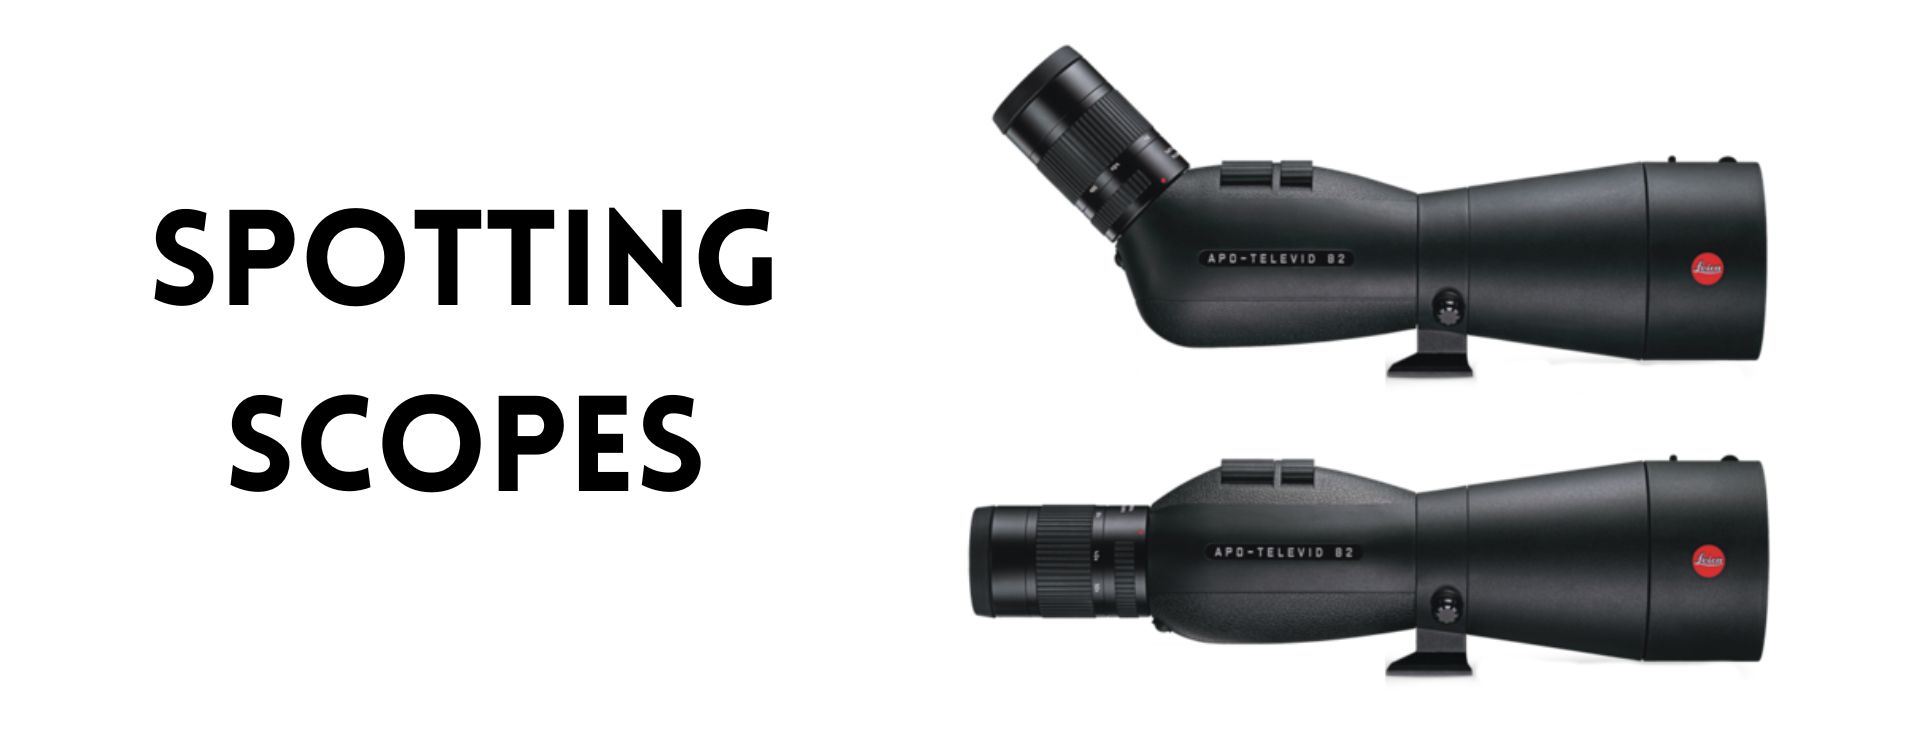 Leica APO Televid Spotting Scopes at Ace Optics UK